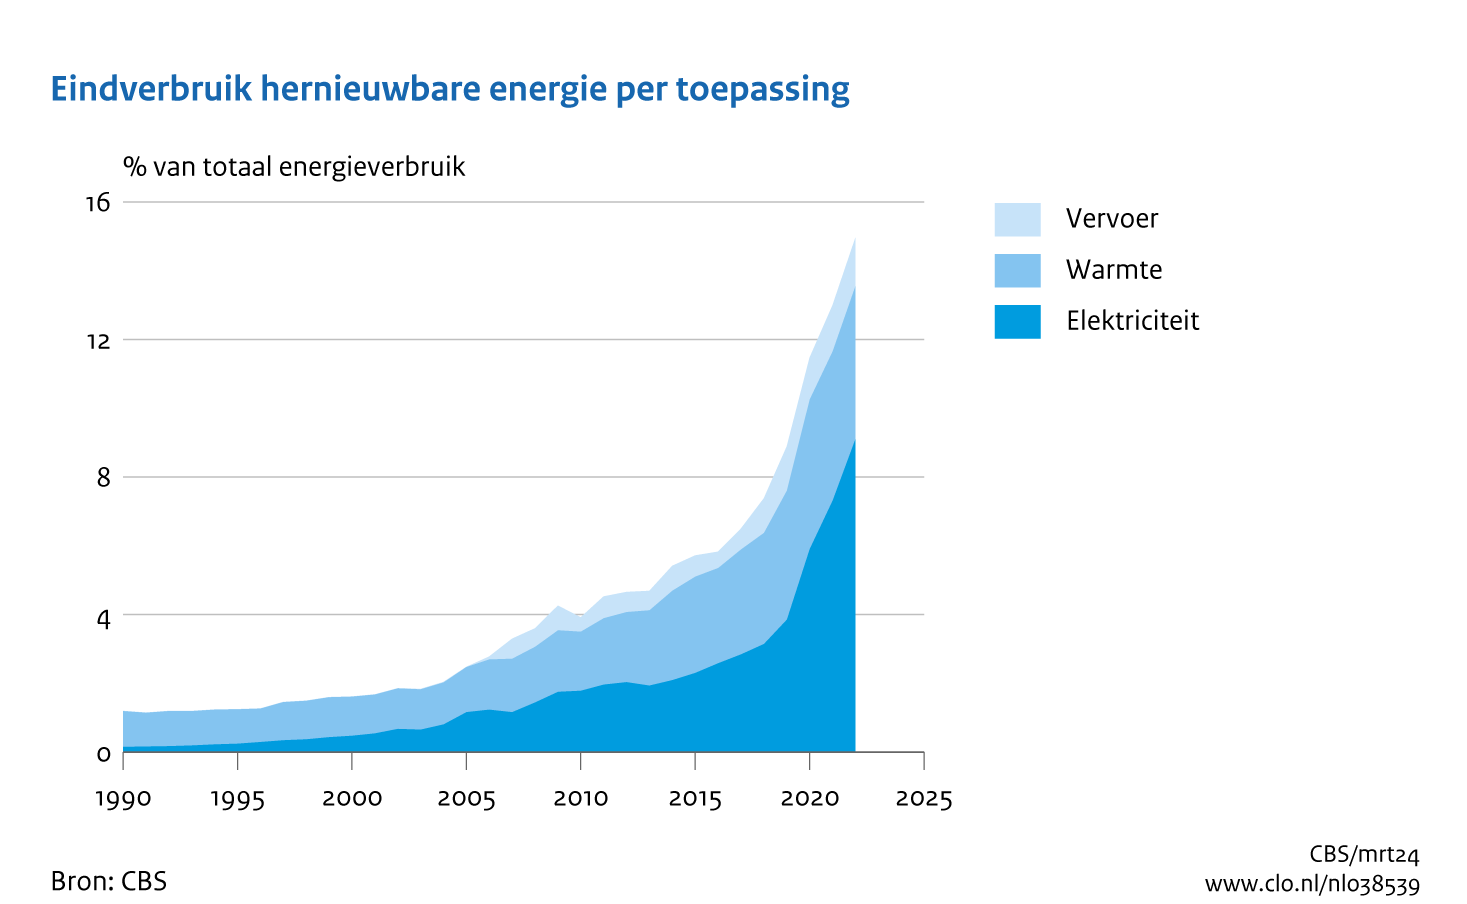 Vlakgrafiek met het eindverbruik van hernieuwbare energie naar toepassing energiebron als percentage van het totale energieverbruik van 1990 tot en met 2022. De drie toepassingen die onderscheiden worden zijn elektriciteit, warmte en vervoer, waarvan de grootste elektriciteit is.